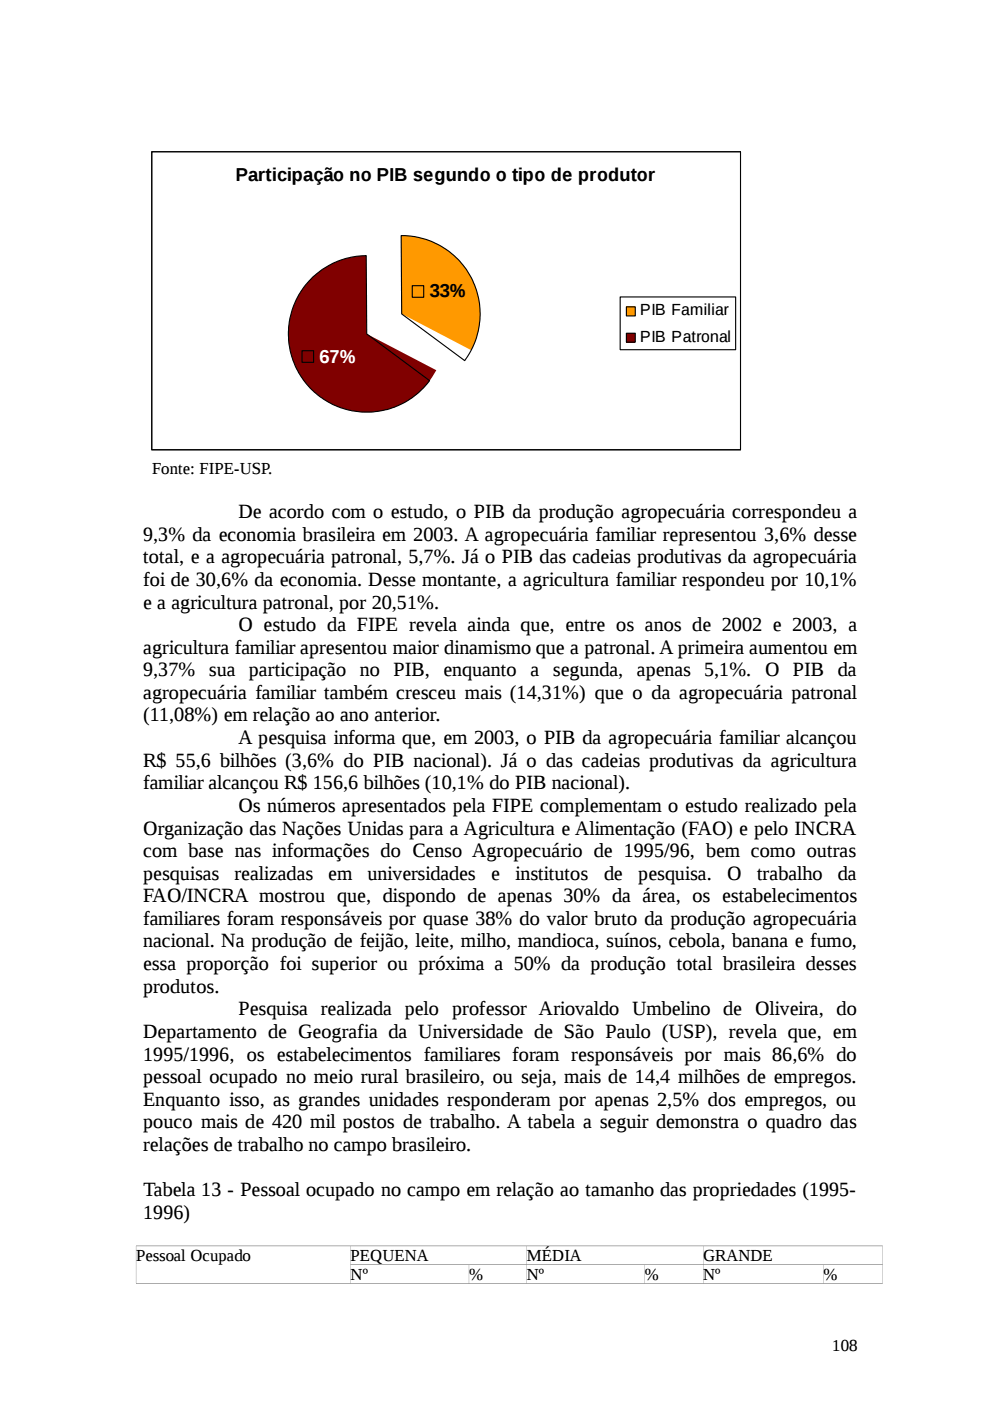 Page 108 from Relatório final da comissão